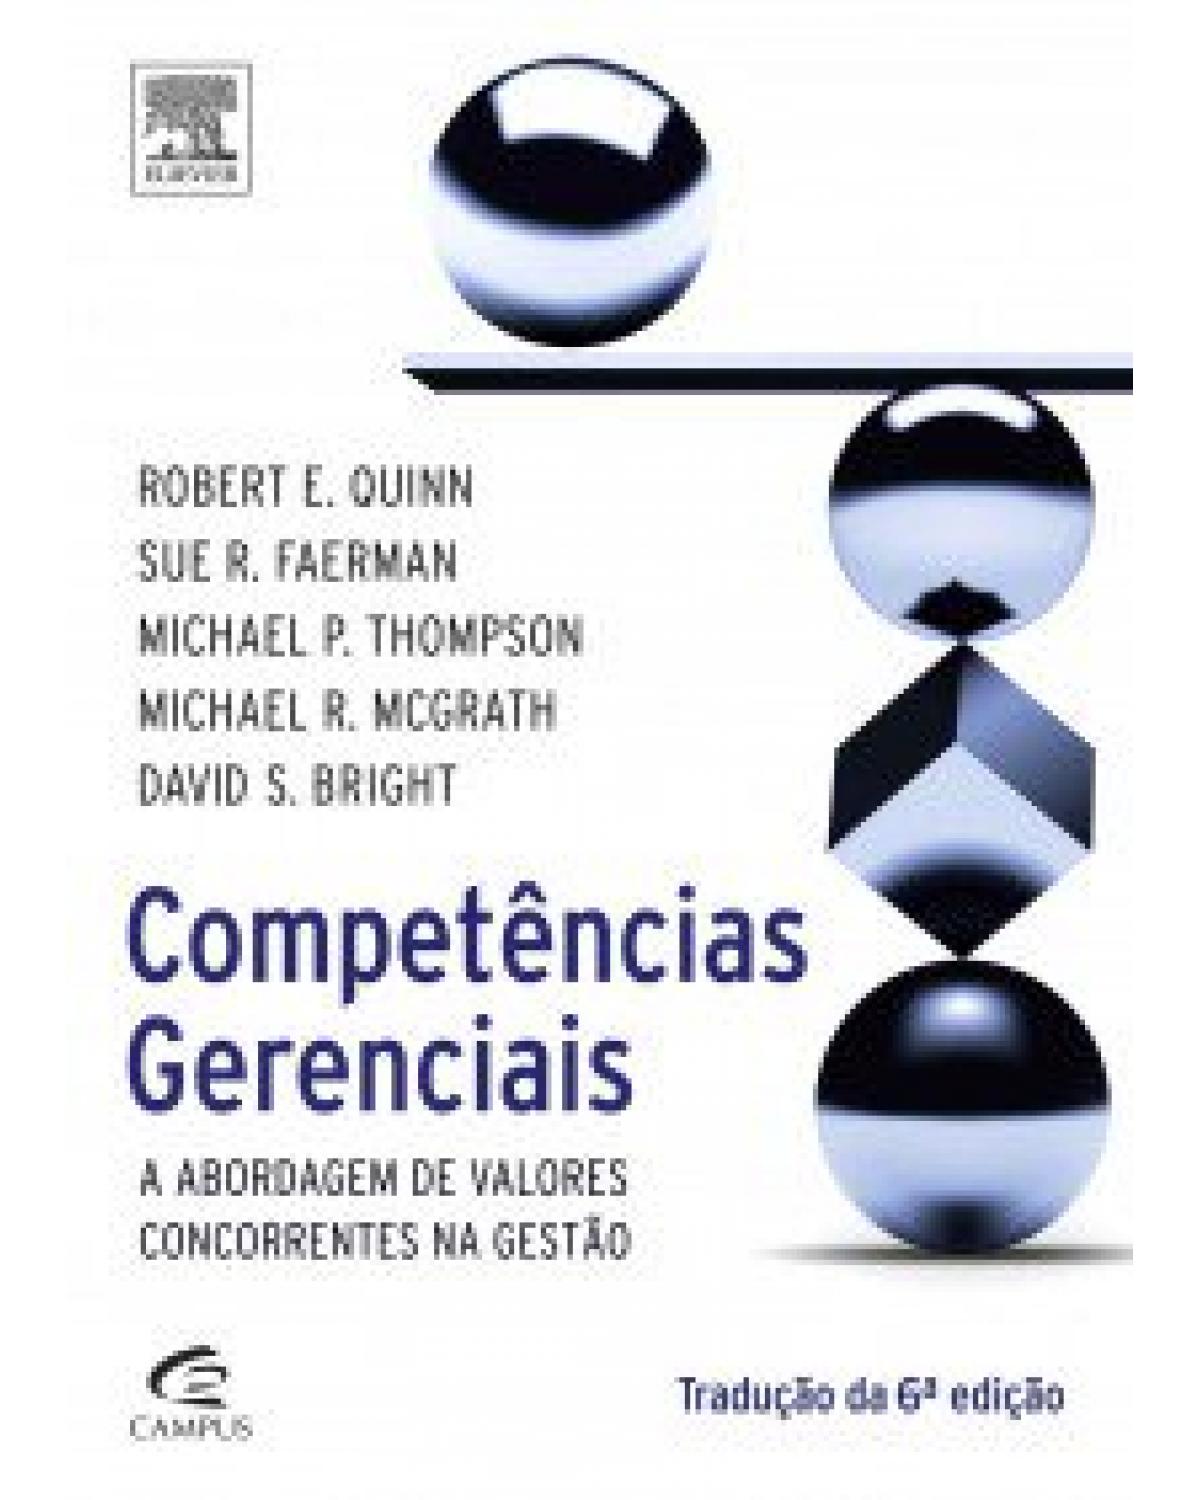 Competências gerenciais - a abordagem de valores concorrentes na gestão - 6ª Edição | 2015